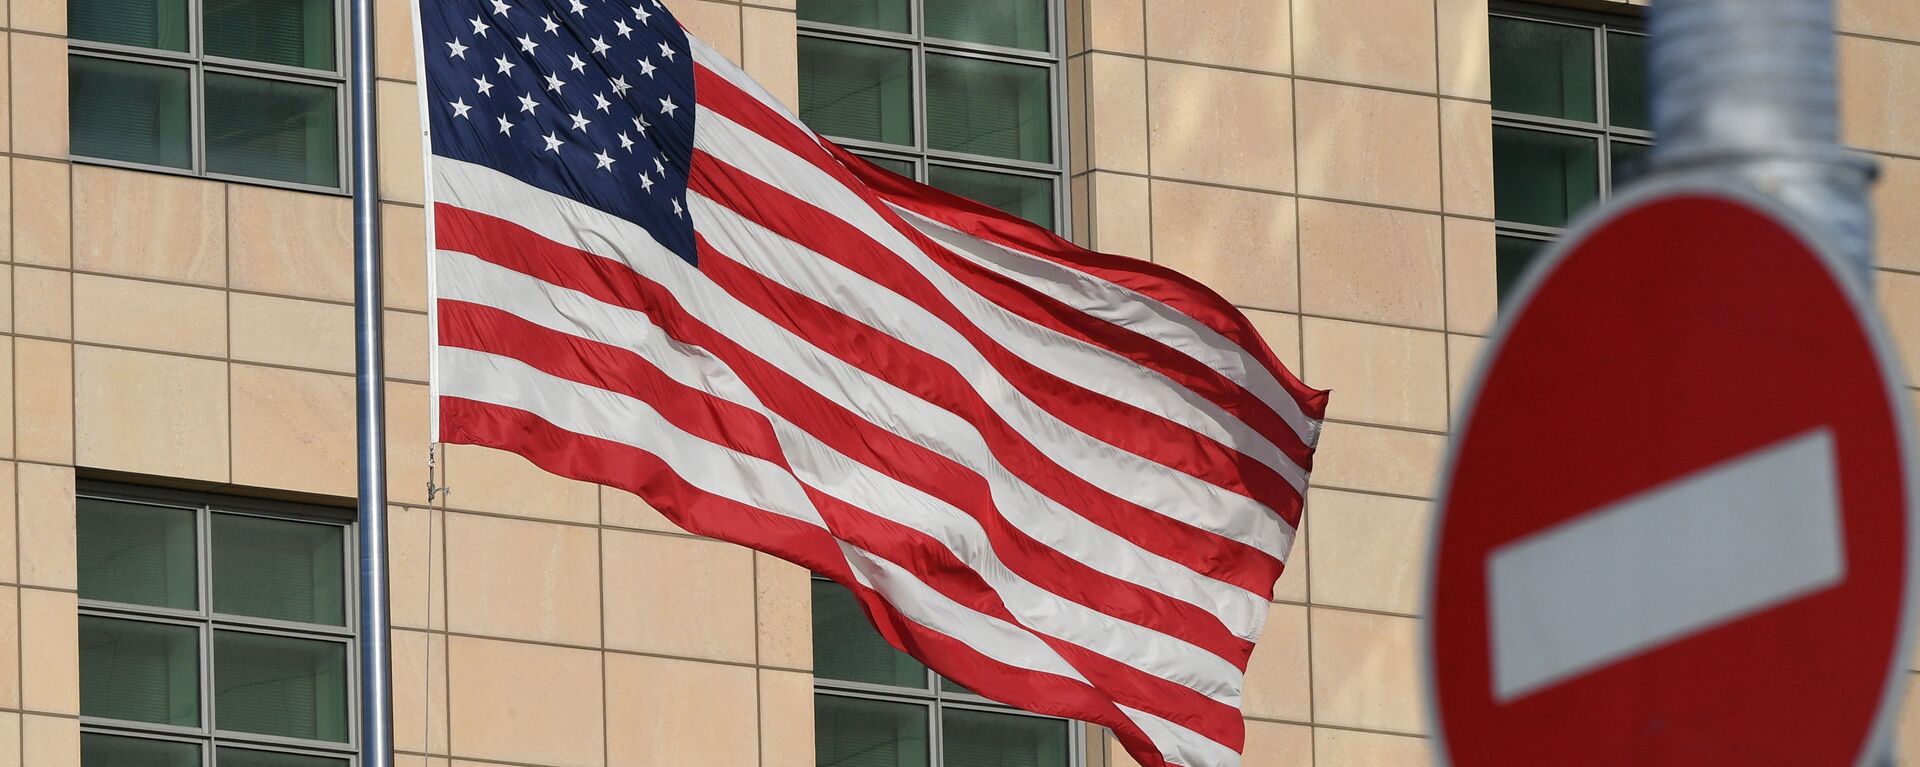 Государственный флаг США у американского посольства в Москве. - Sputnik Абхазия, 1920, 01.05.2021